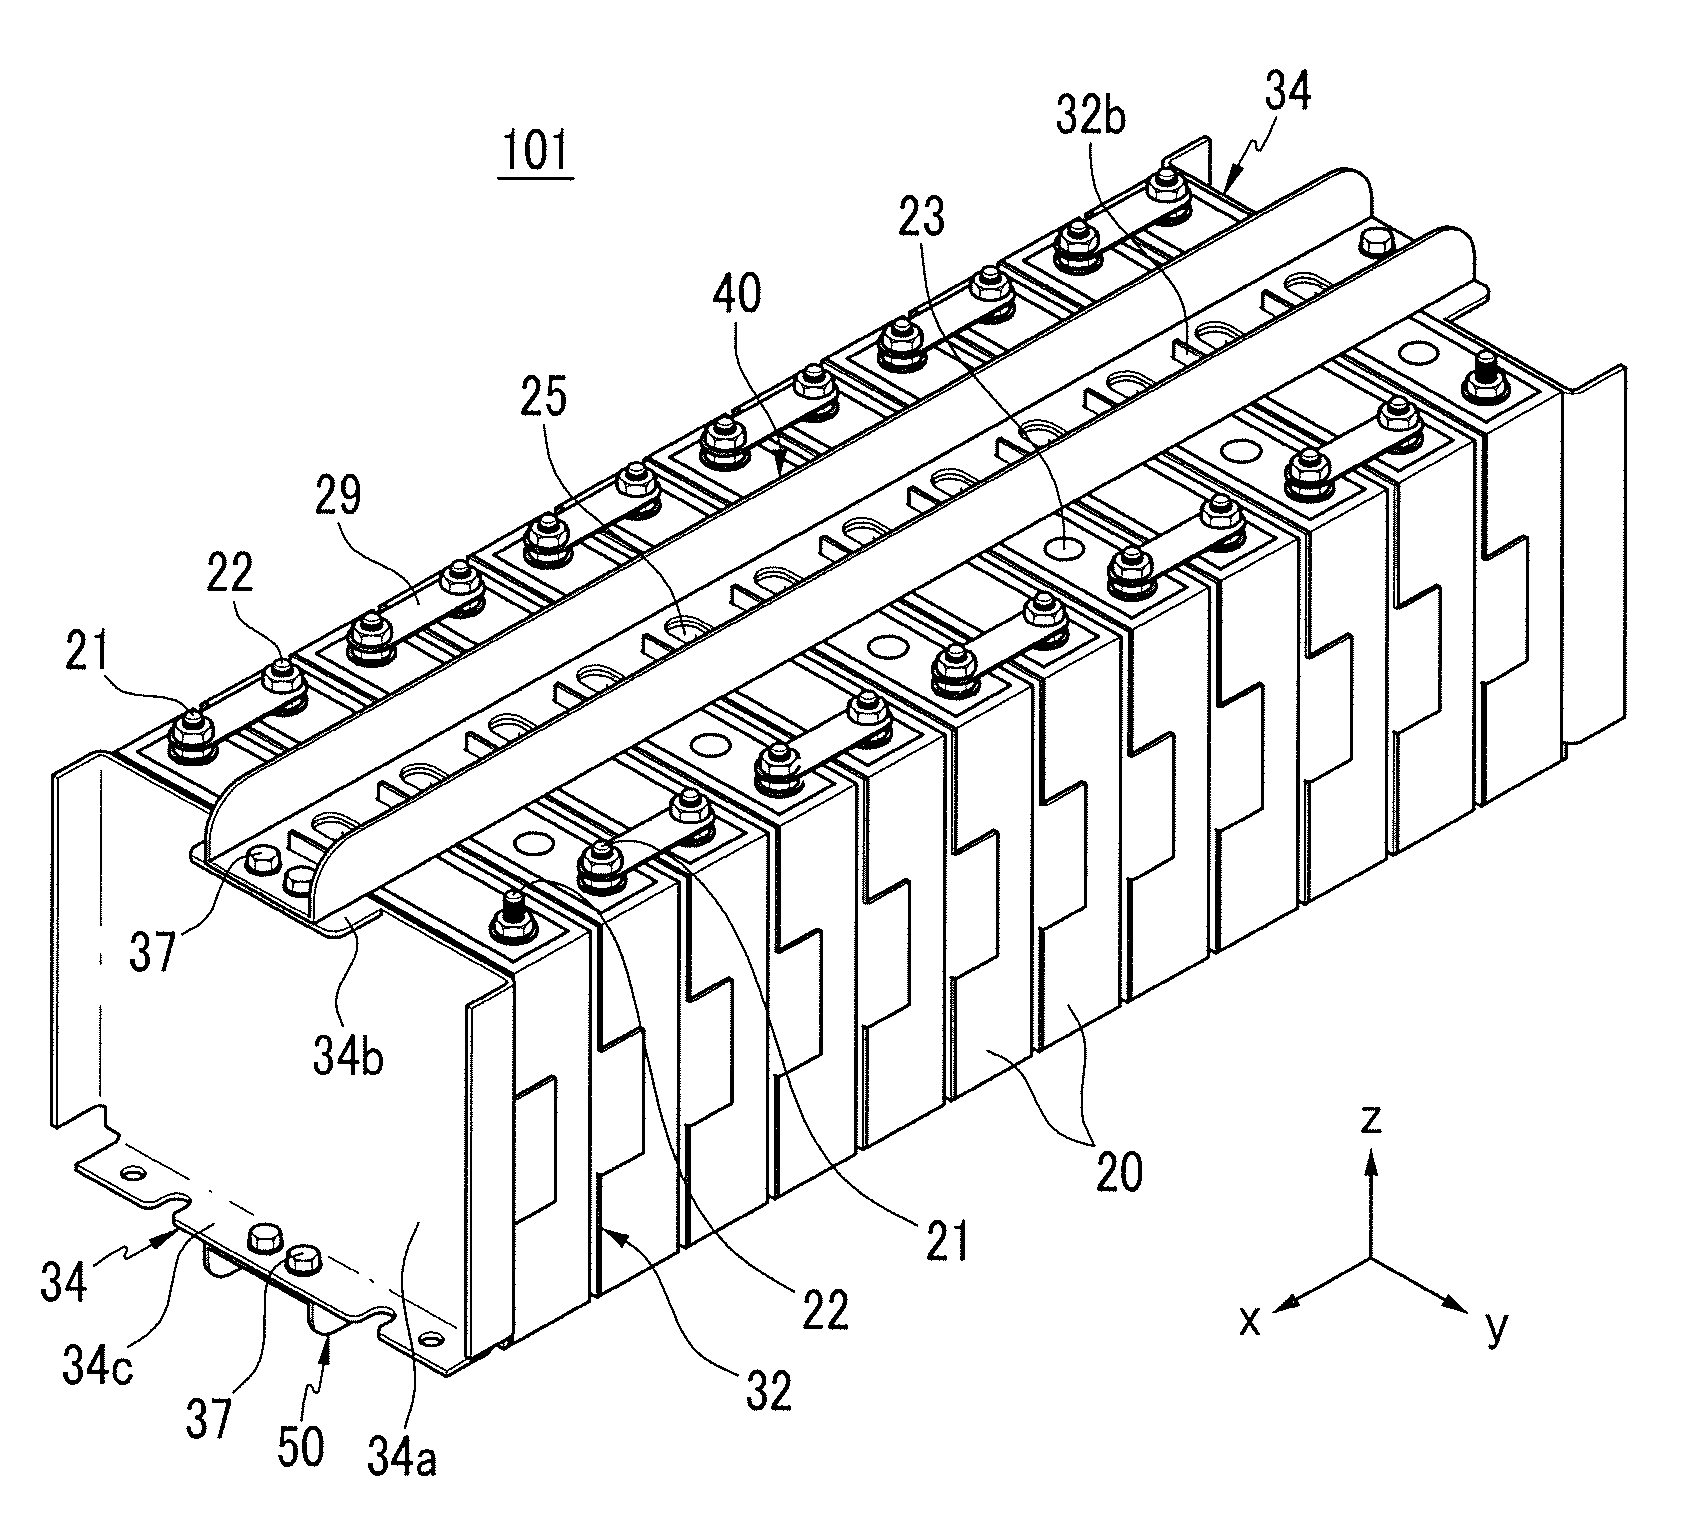 Battery module